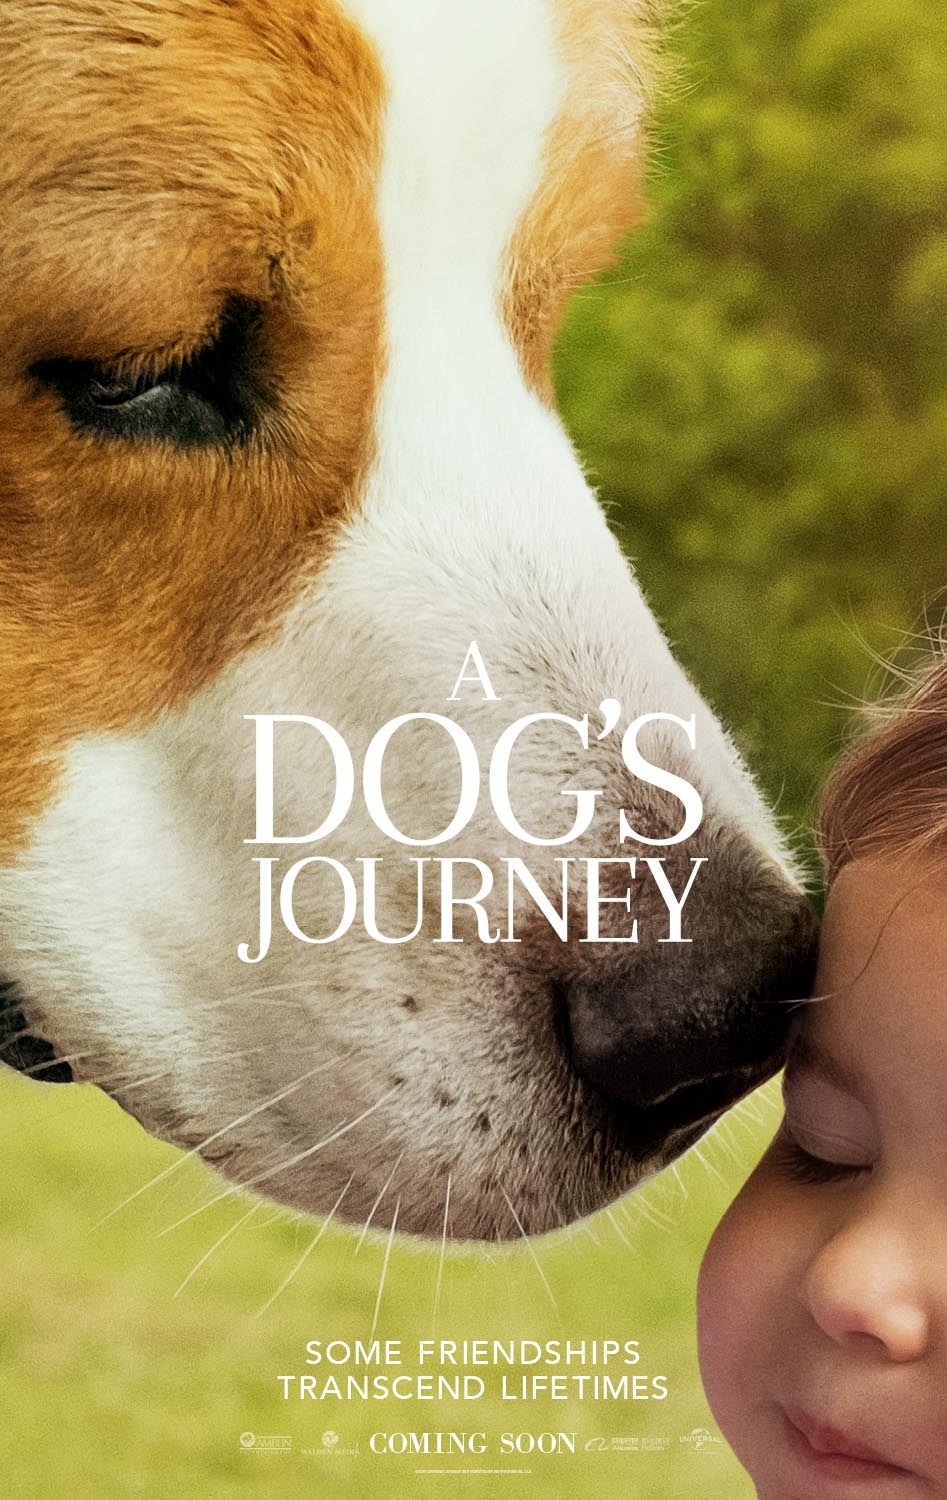 a dog's journey part 3